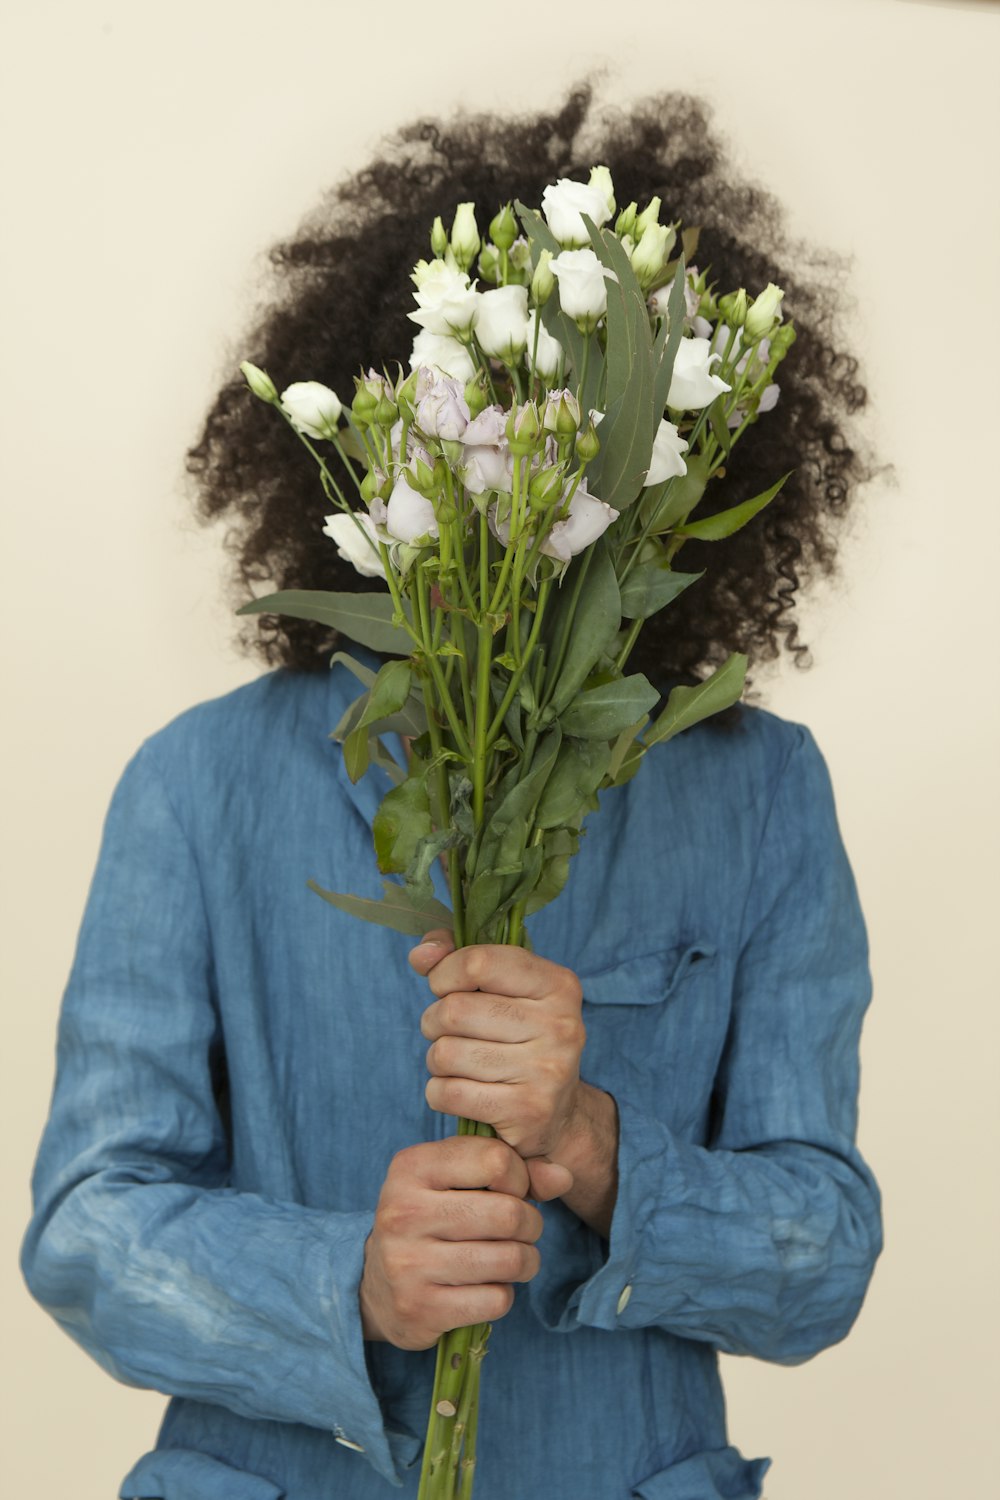 Photographie sélective de mise au point d’une personne tenant un bouquet de fleurs de tulipes blanches